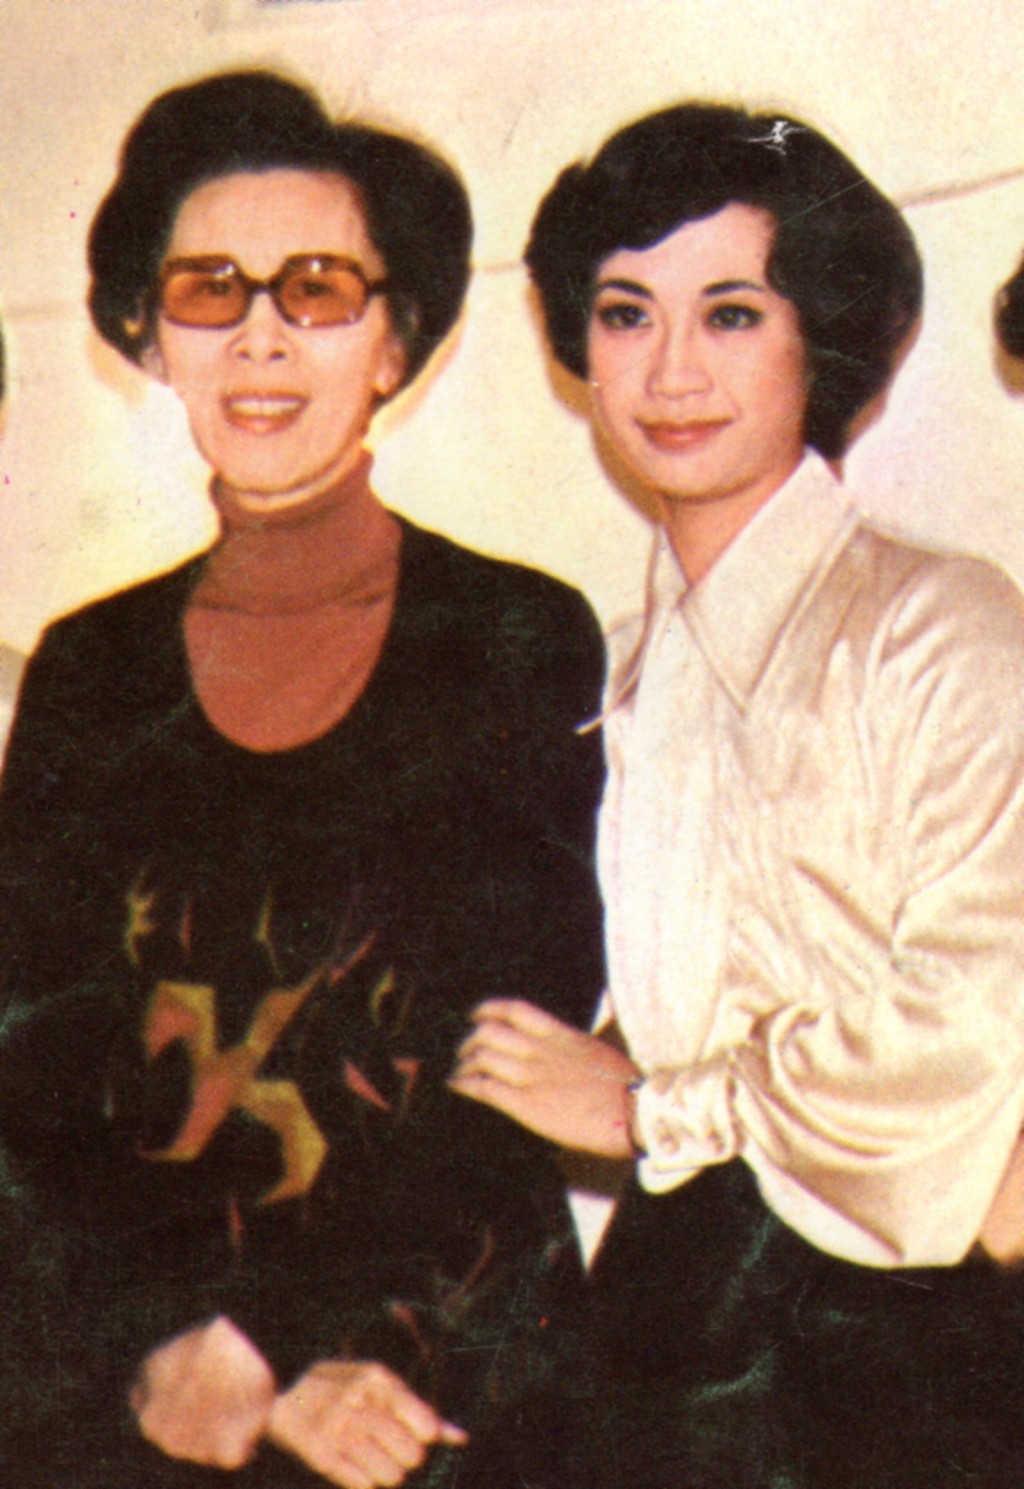 1979年龍劍笙參與《省港紅伶大會串》，恩師任劍輝到場打氣。